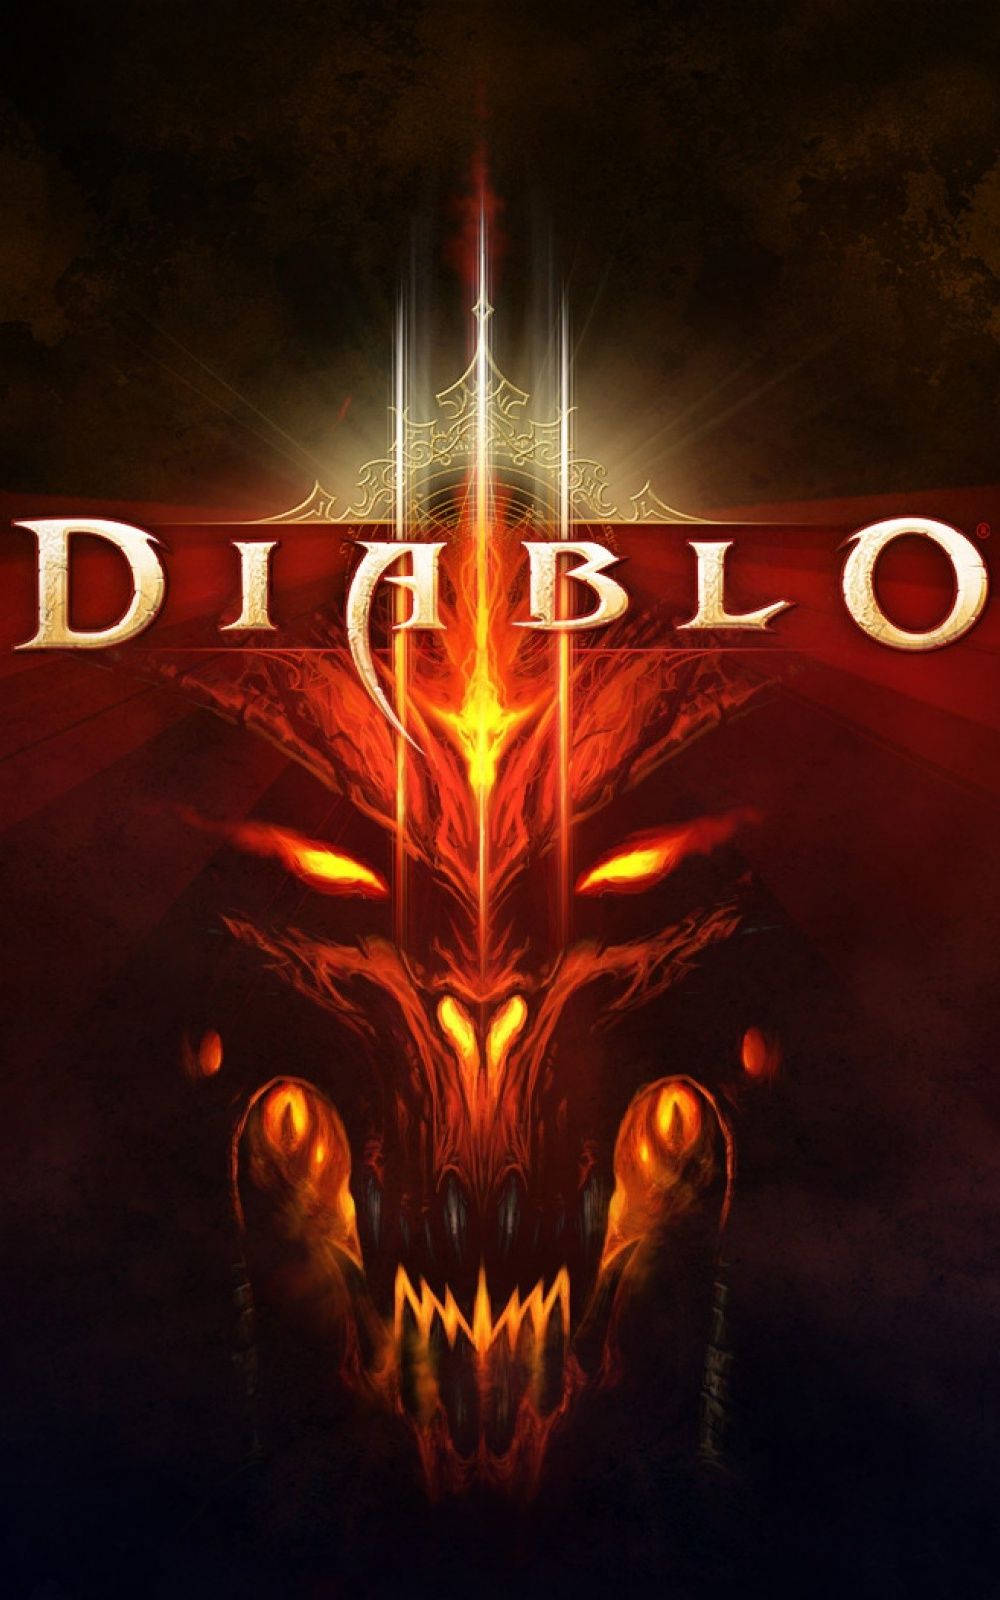 Diablo III Android Gaming Tapet: Et smukt Diablo III tema tapet, der kommer til live på Android. Wallpaper